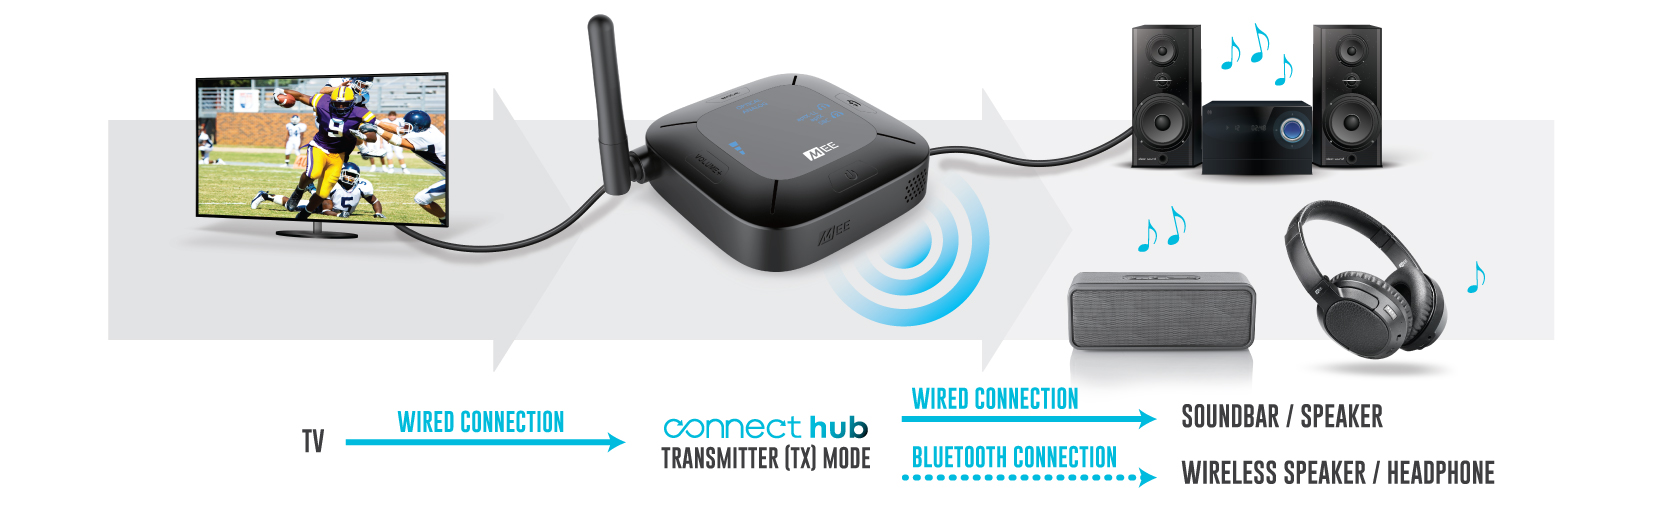 Connect hub. Аудио блютуз передатчик. Блютуз приемопередатчик аудио. Bluetooth хаб. Bluetooth приёмо передачик аудио на аккумуляторах.